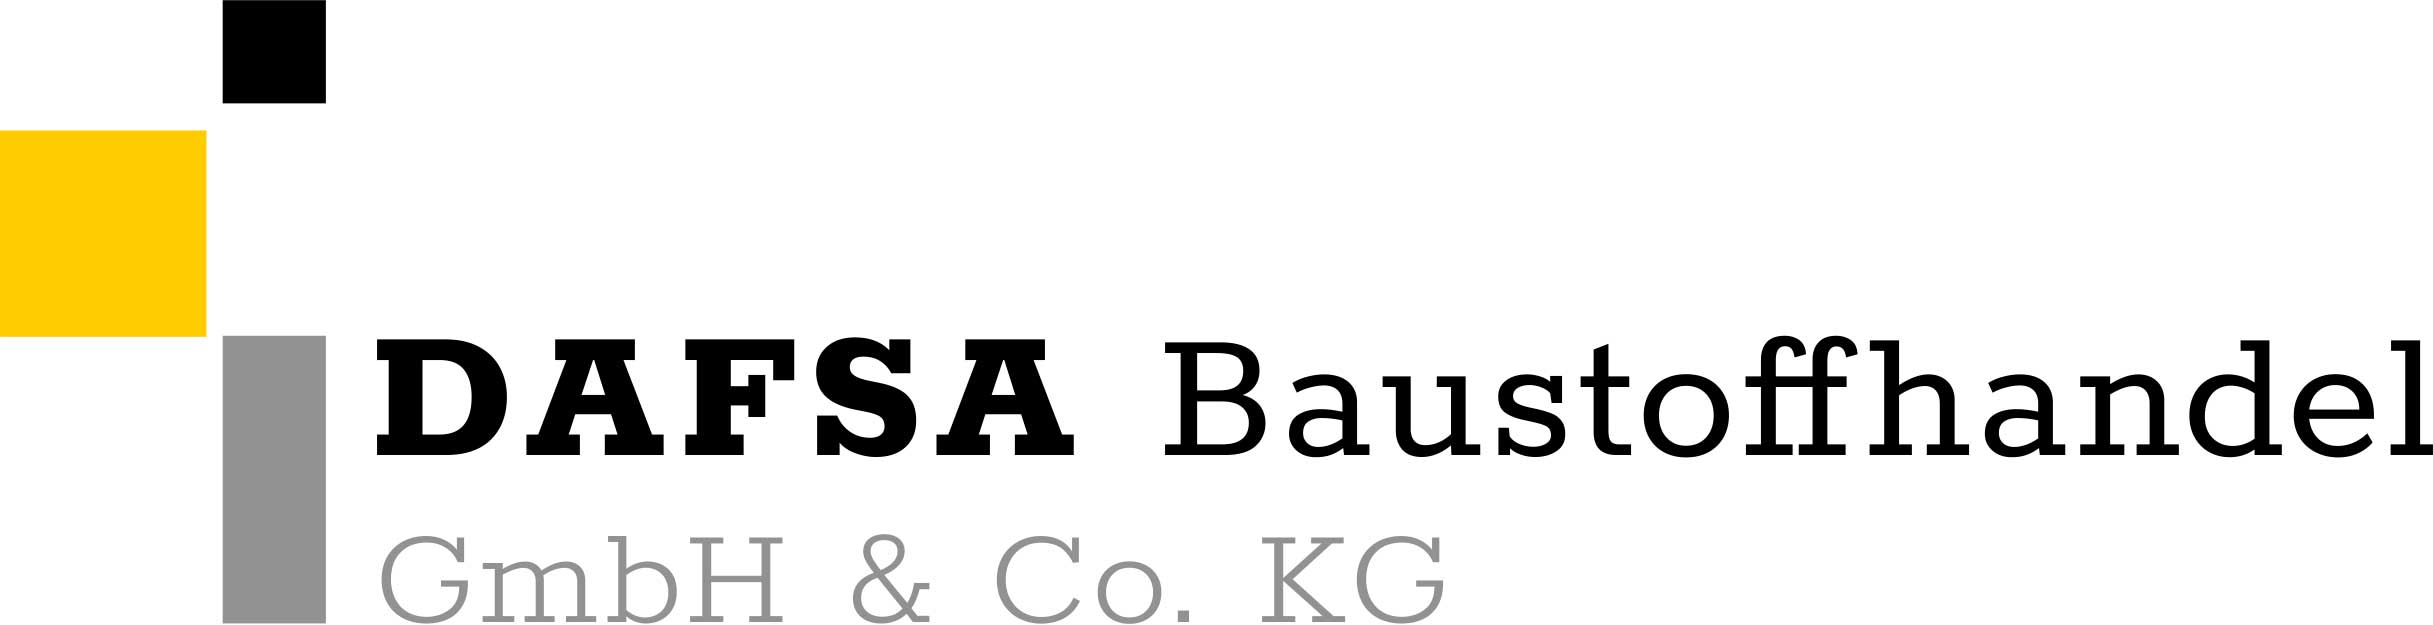 Logo DAFSA Baustoffhandel GmbH & Co. KG